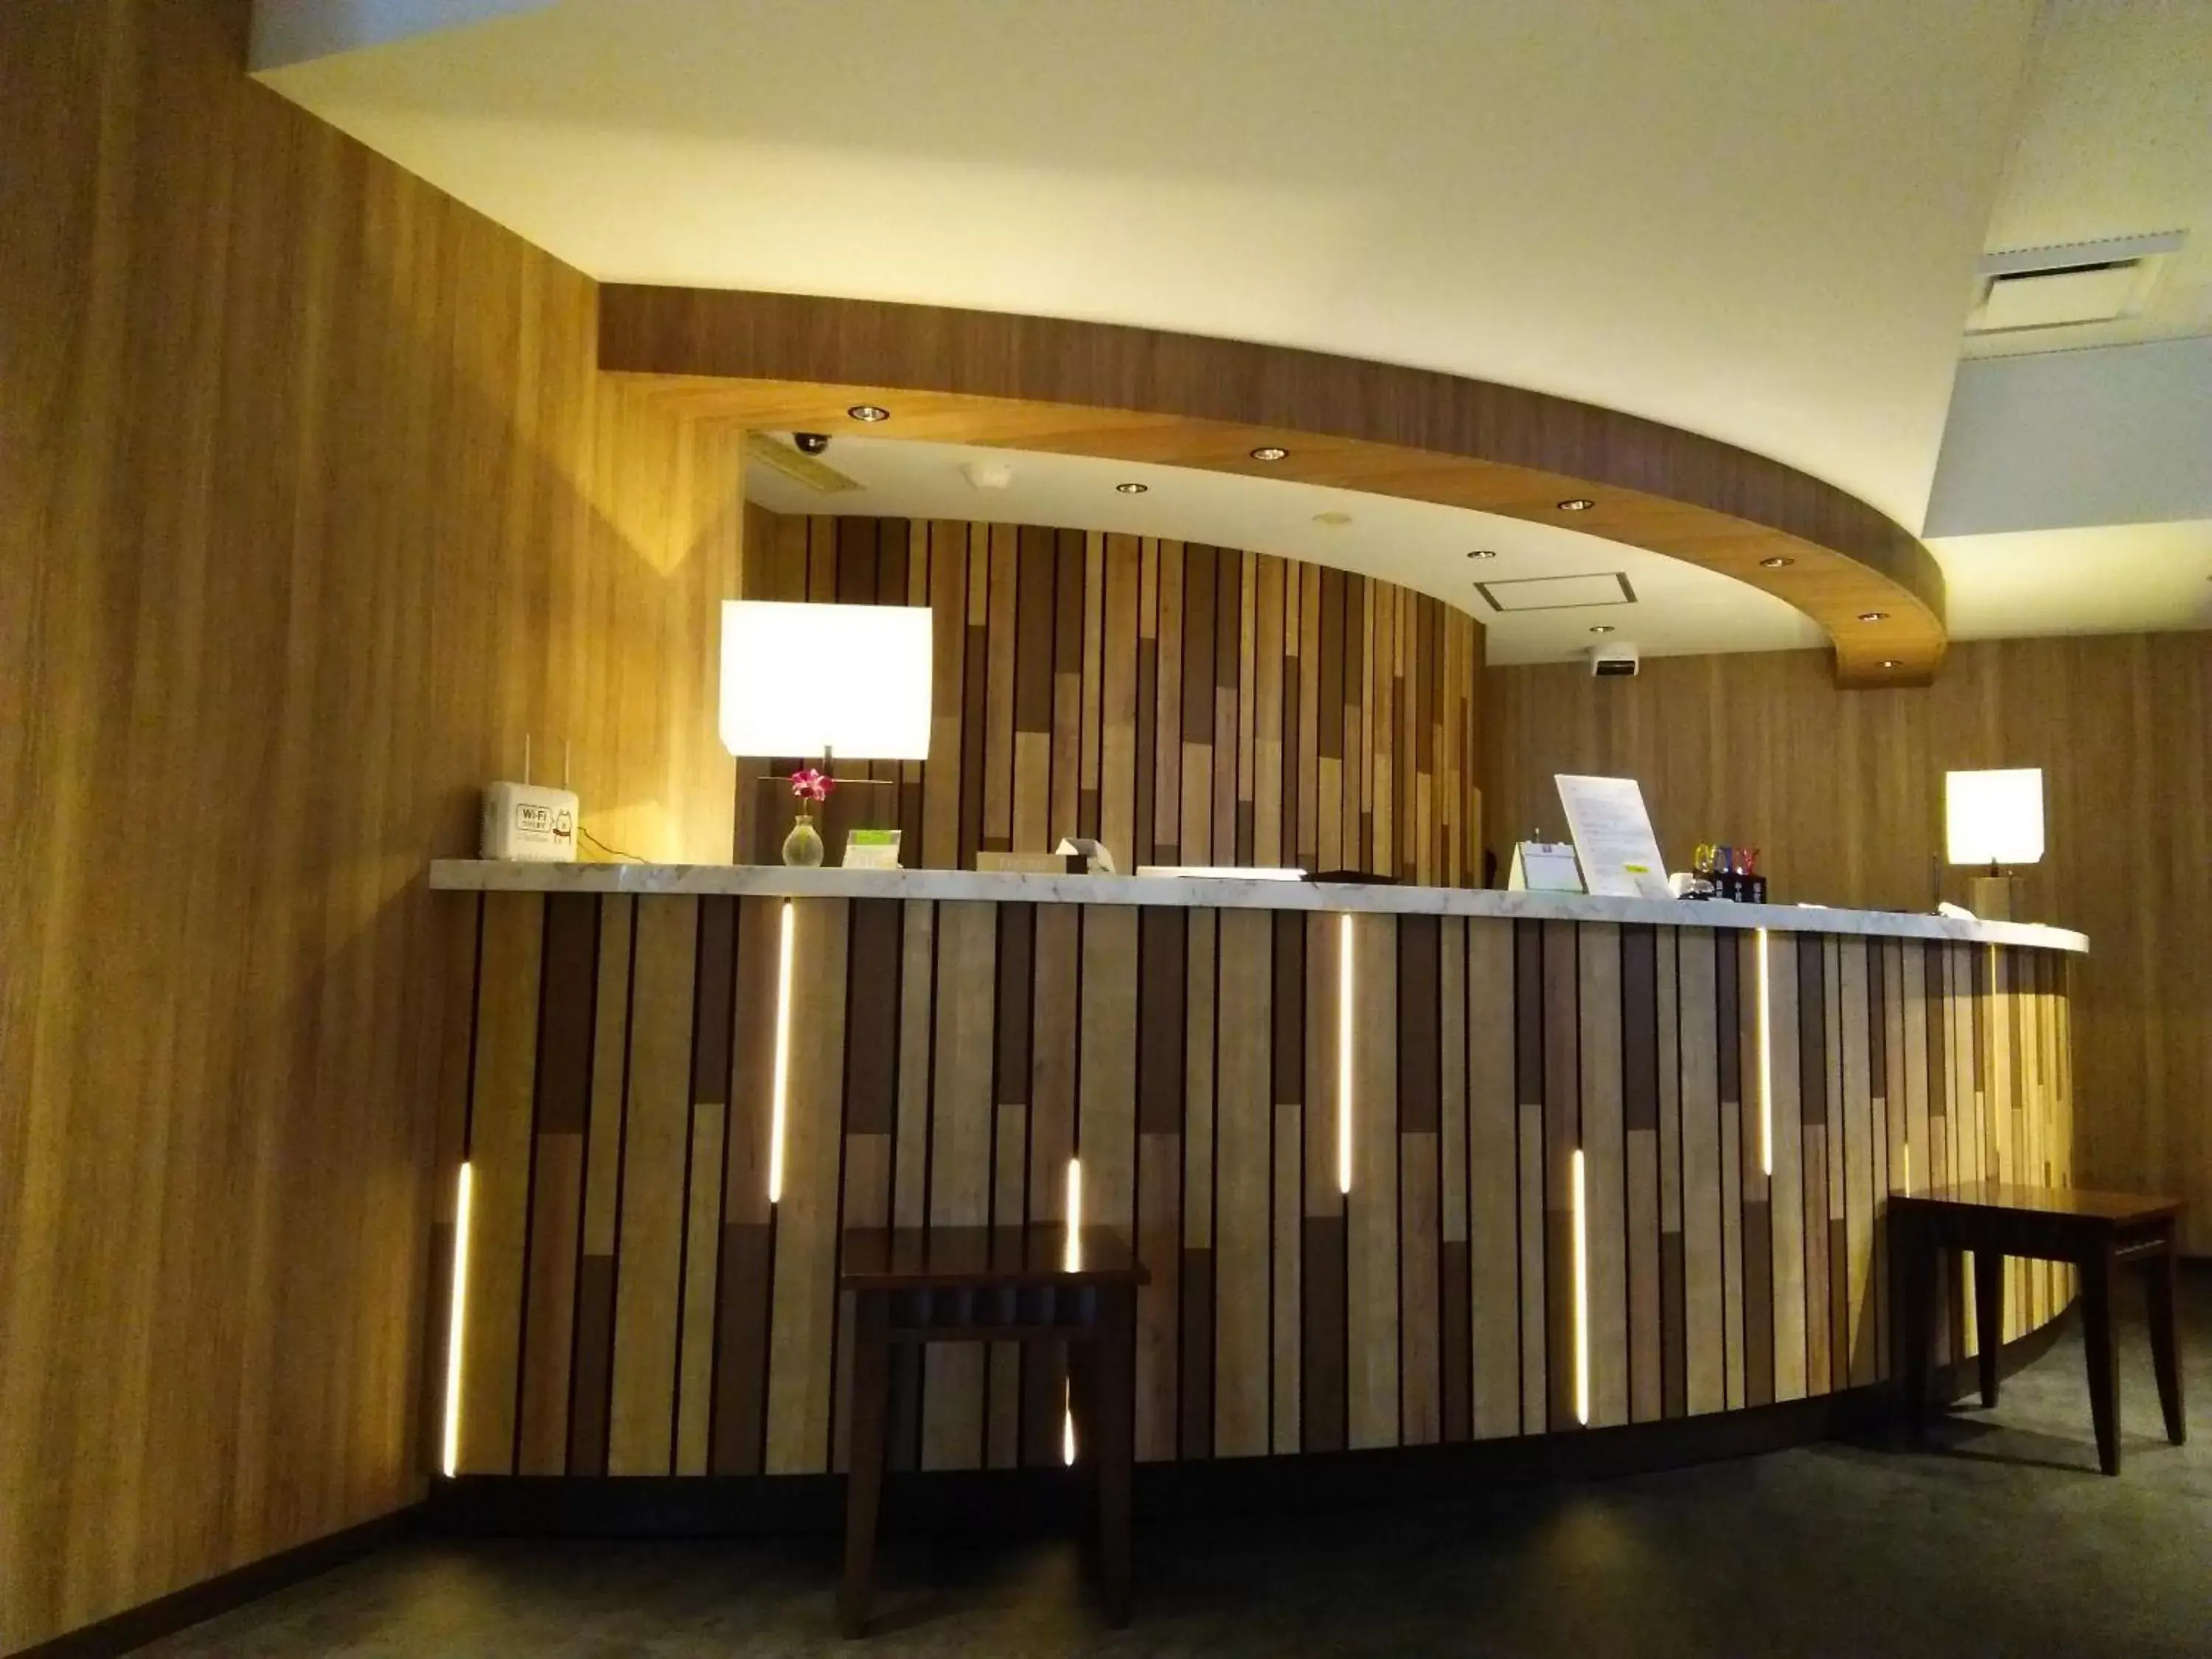 Lobby or reception, Lobby/Reception in Fujinomiya Fujikyu Hotel